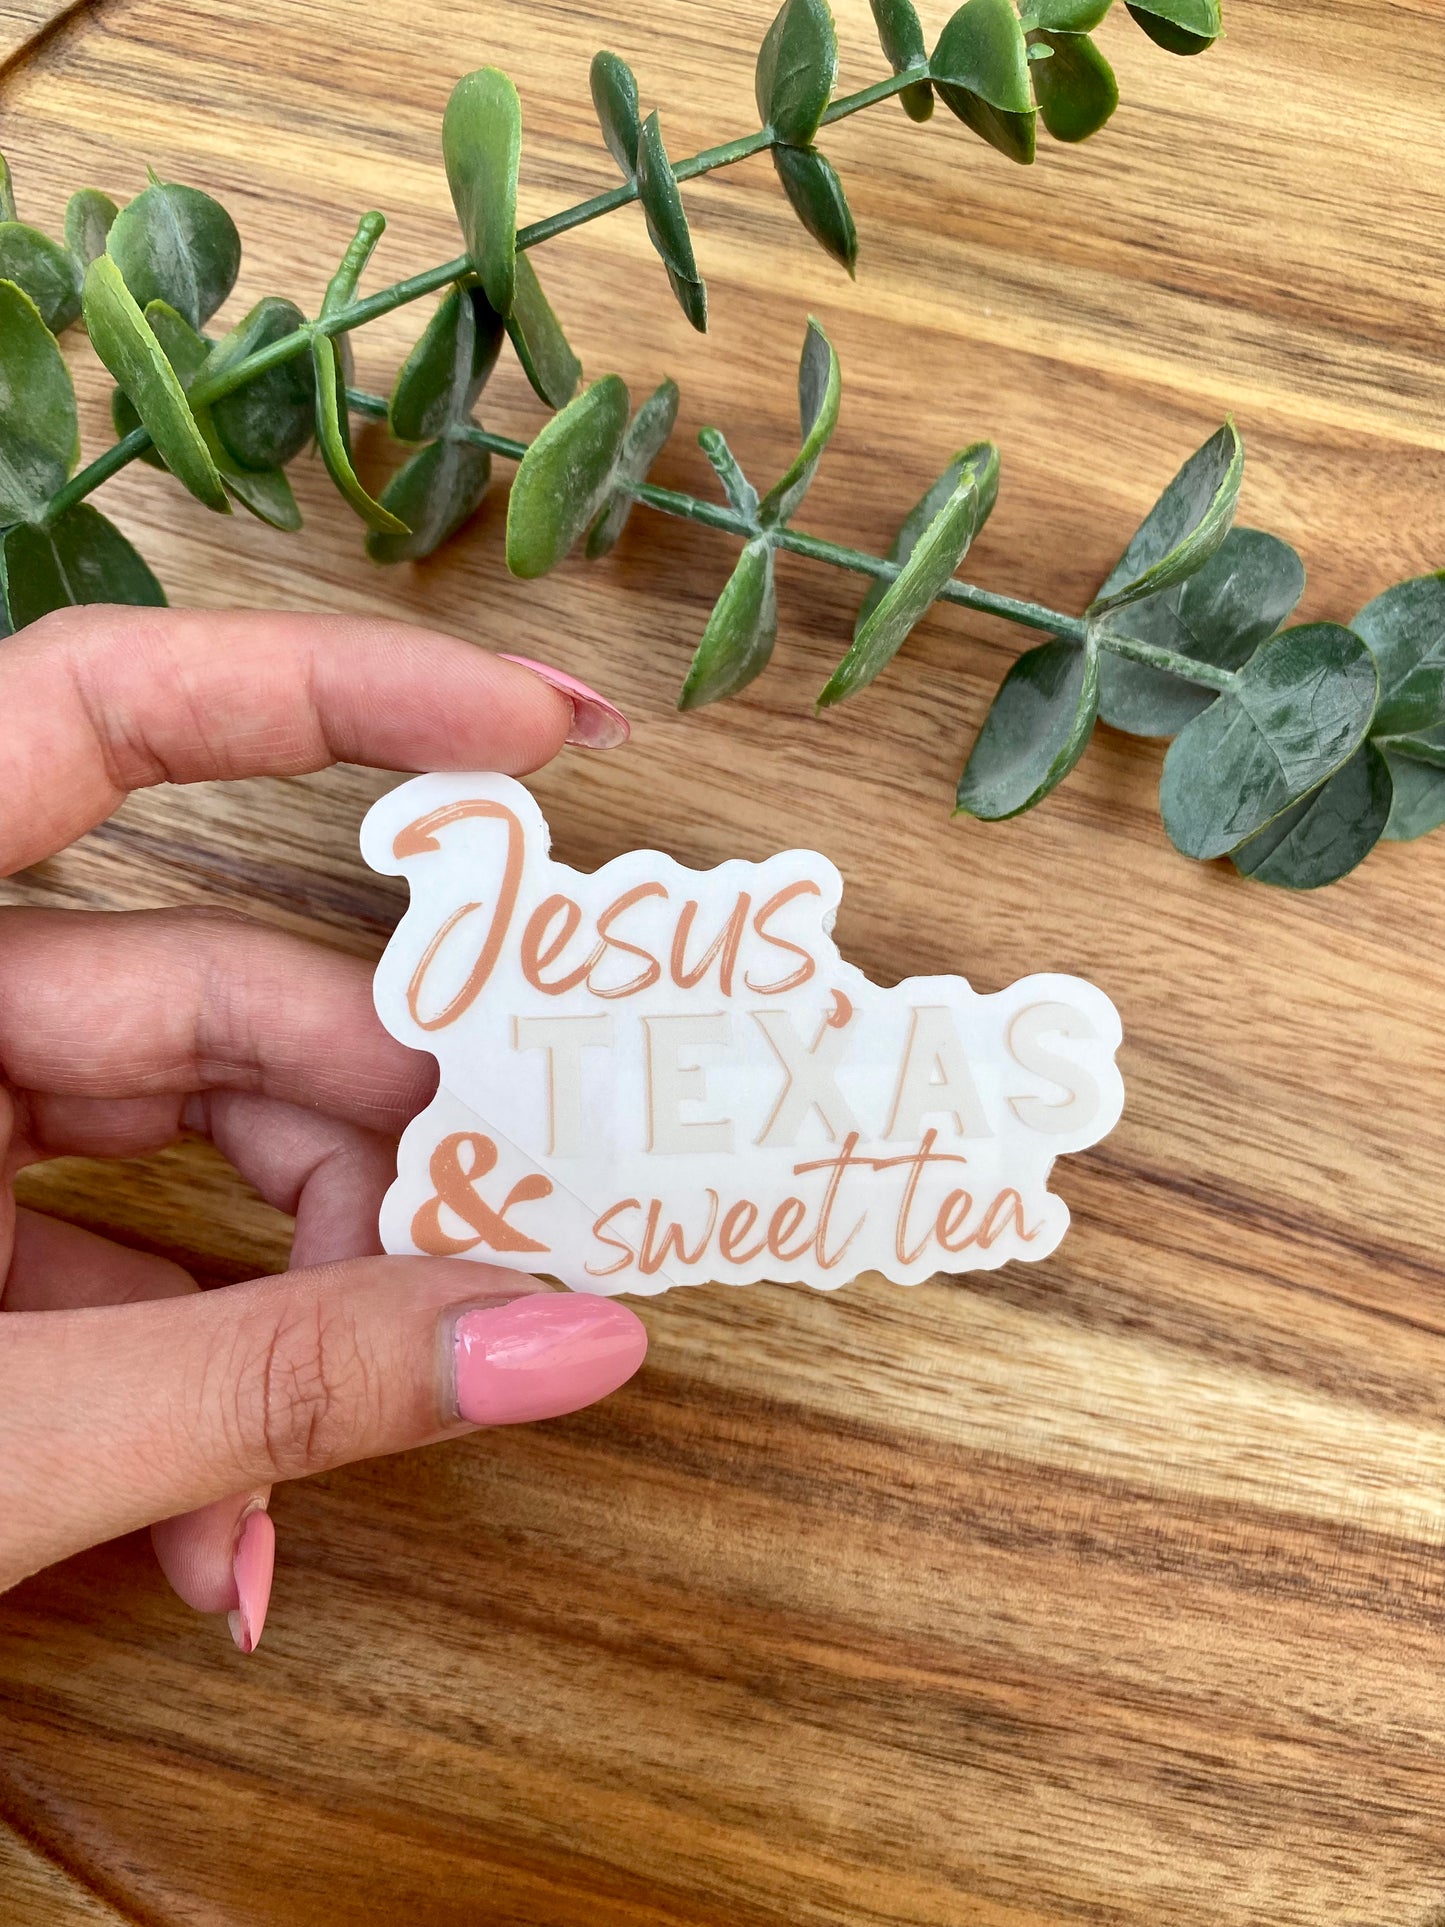 CLEAR Jesus, Texas & Sweet Tea - Orange Sticker